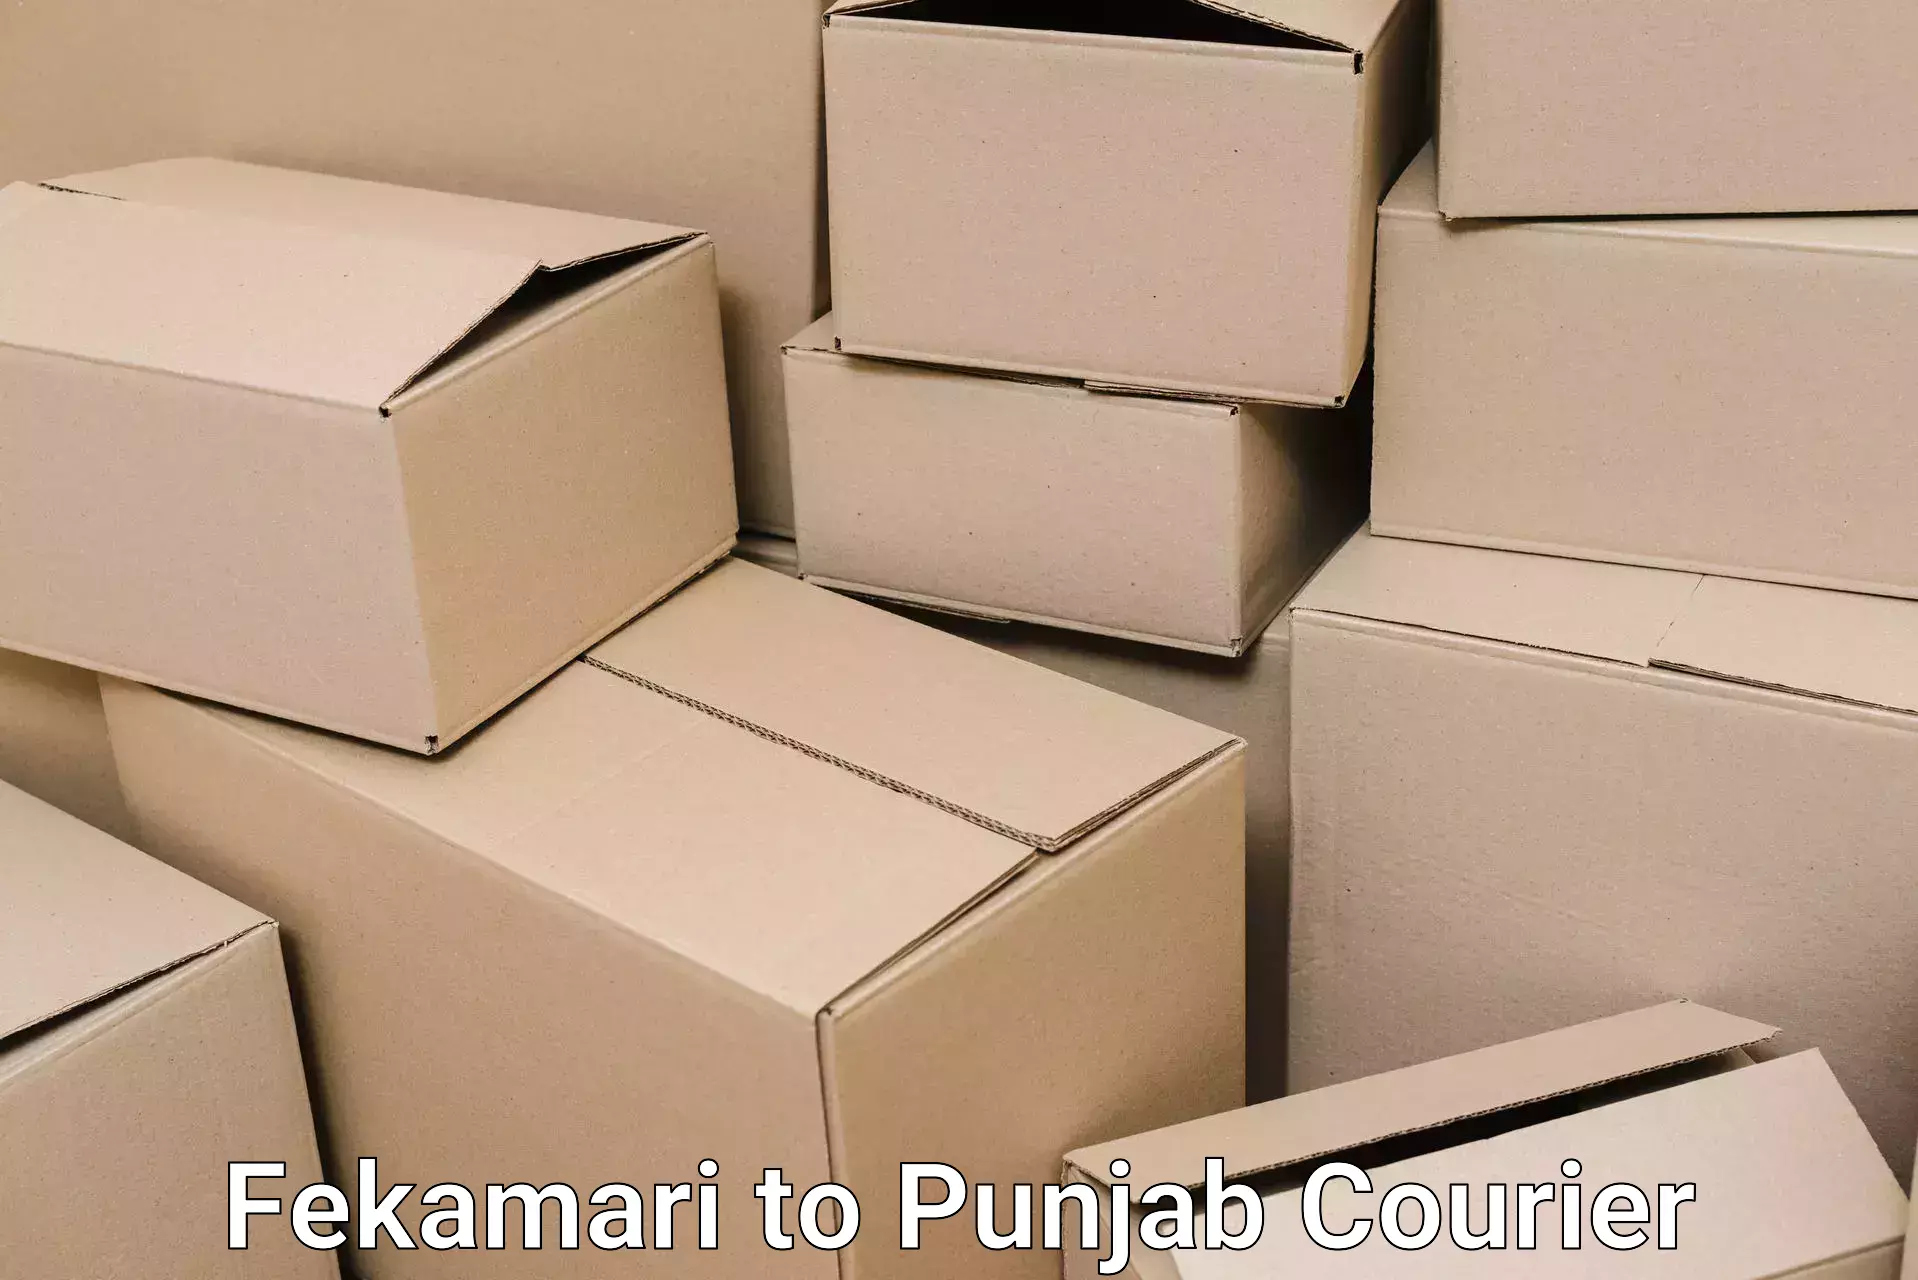 Full-service movers in Fekamari to Punjab